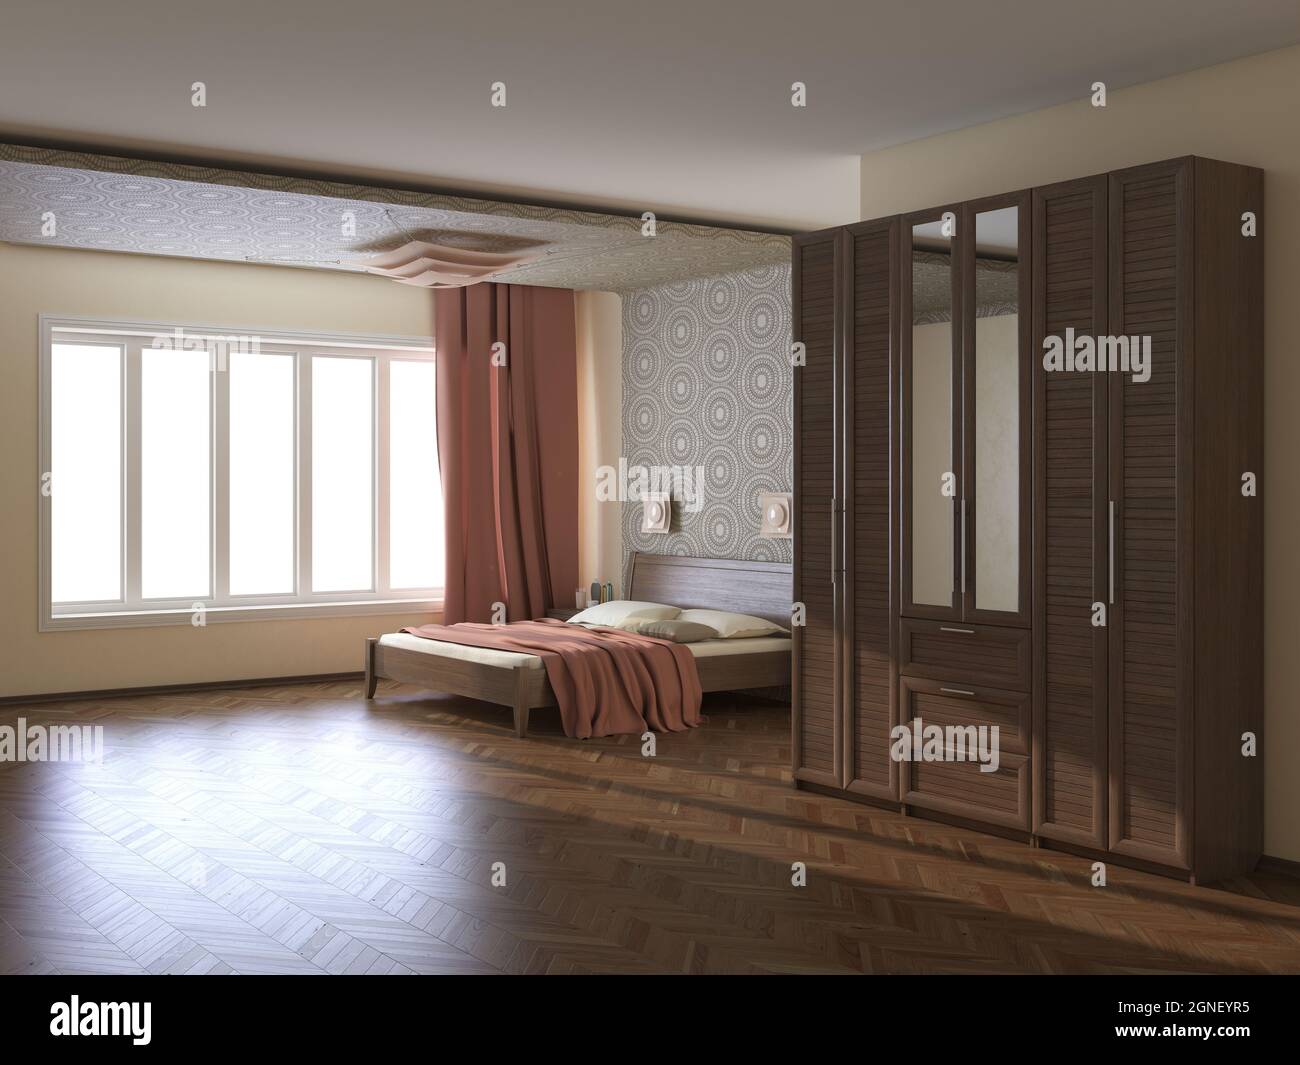 Intérieur moderne avec murs beige, rideaux en terre cuite, grande fenêtre, lit avec oreillers, armoire avec miroir et parquet Banque D'Images